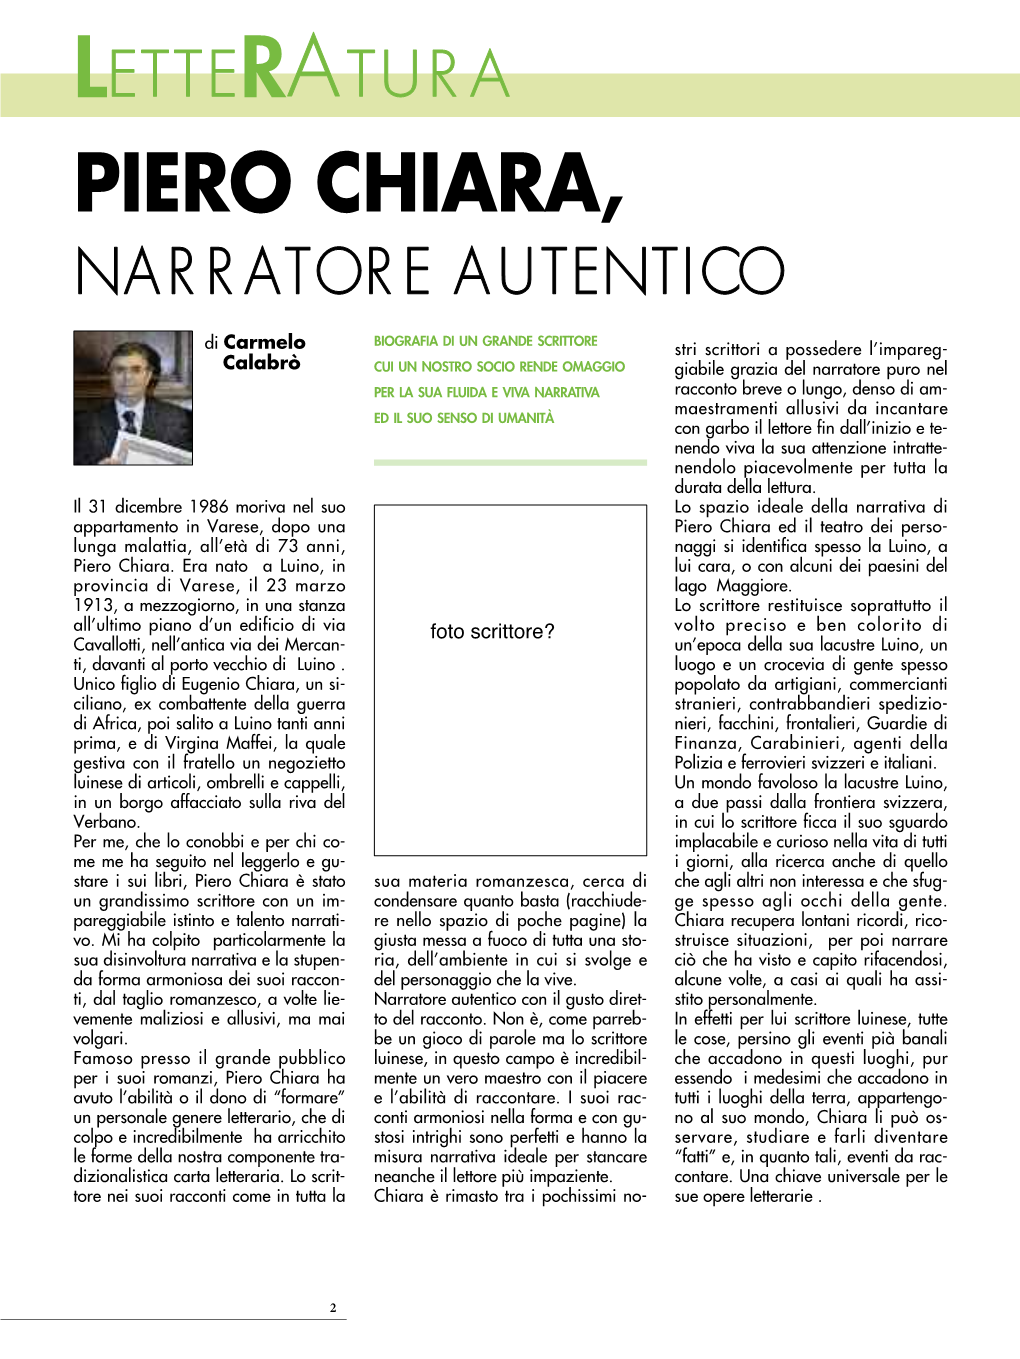 Piero Chiara, Na R R Ator E a Utentico